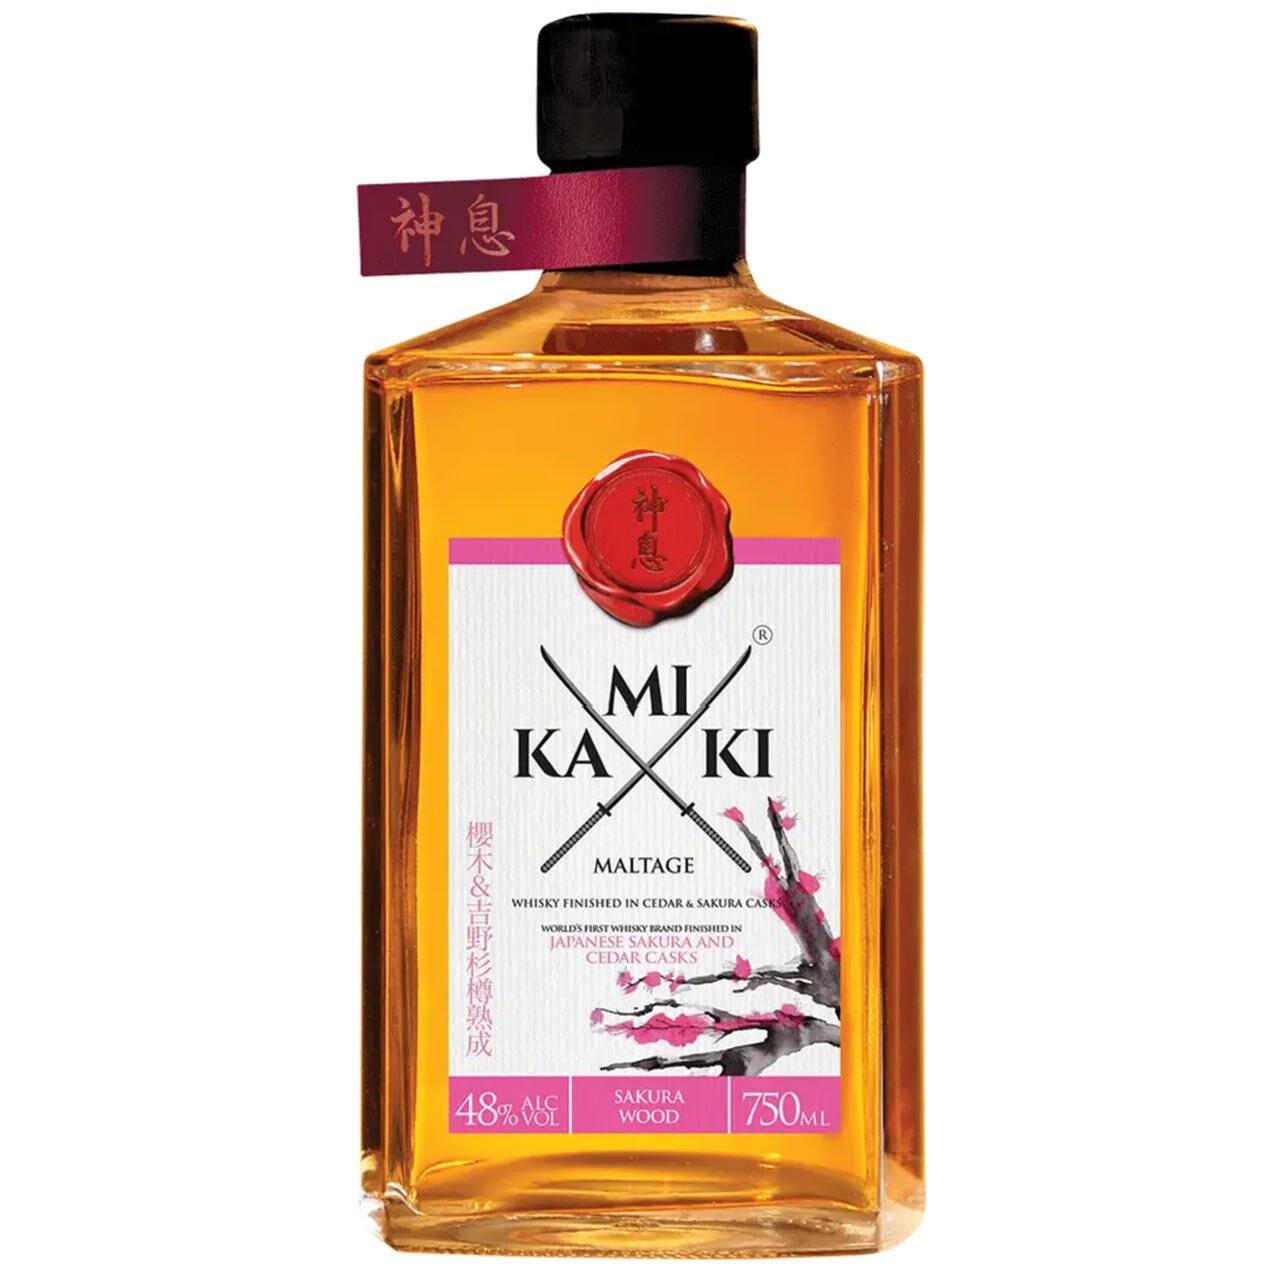 Kamiki Sakura Malt Whisky (Only Available As An Add-On)